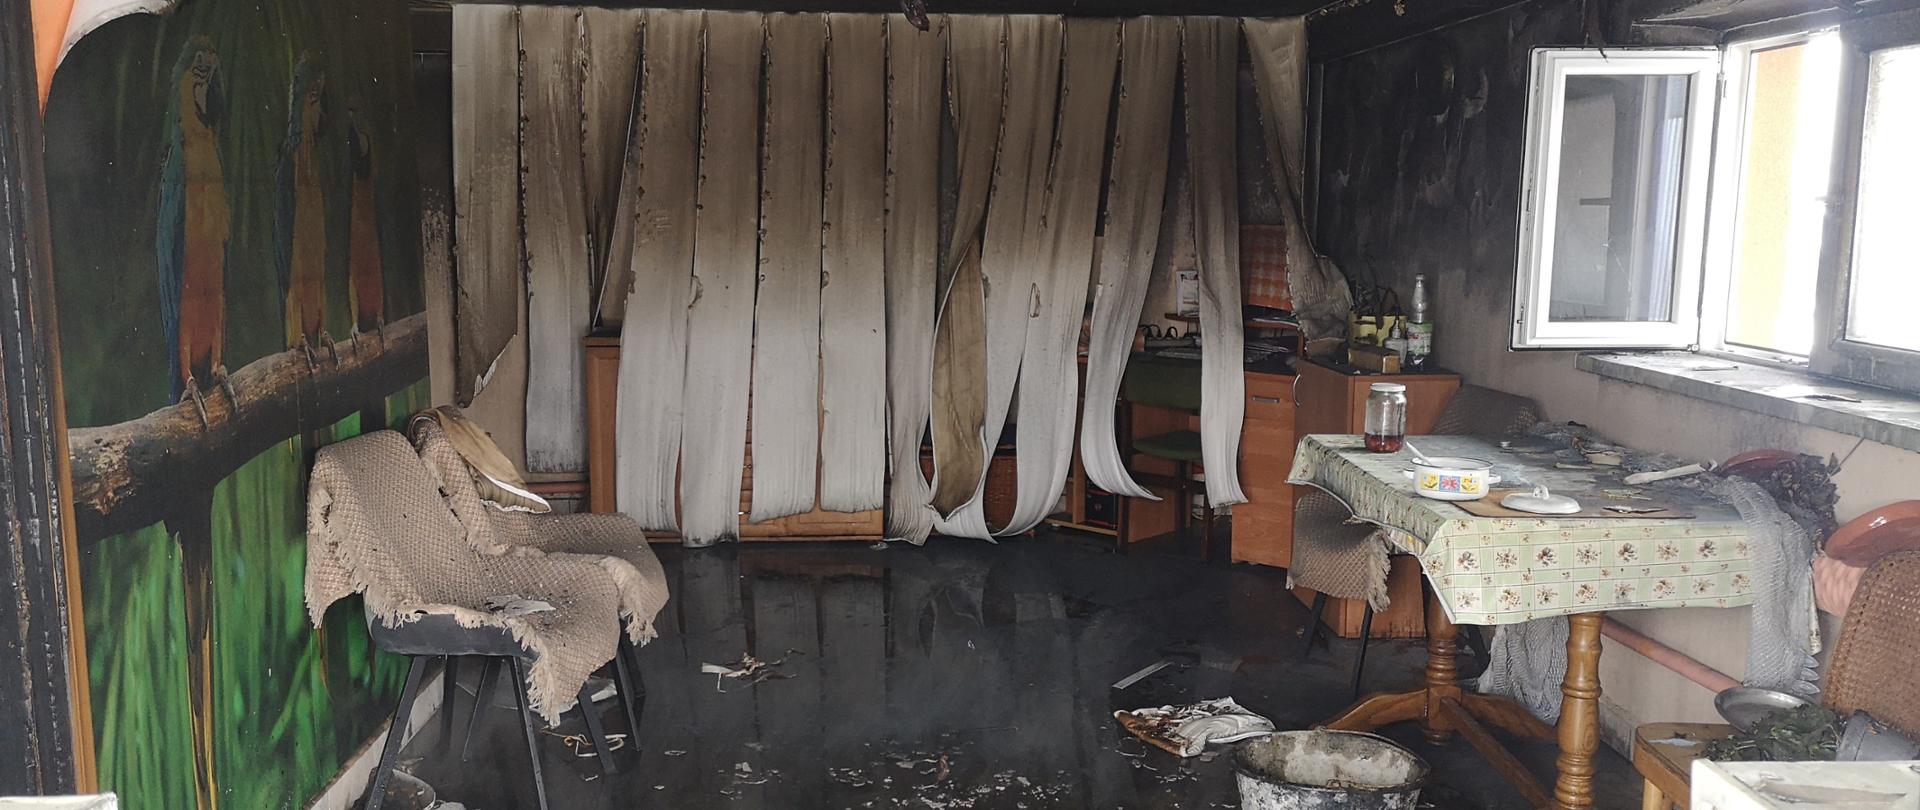 widok pomieszczenia po pożarze.Na zdjęciu widoczne opalone ściany